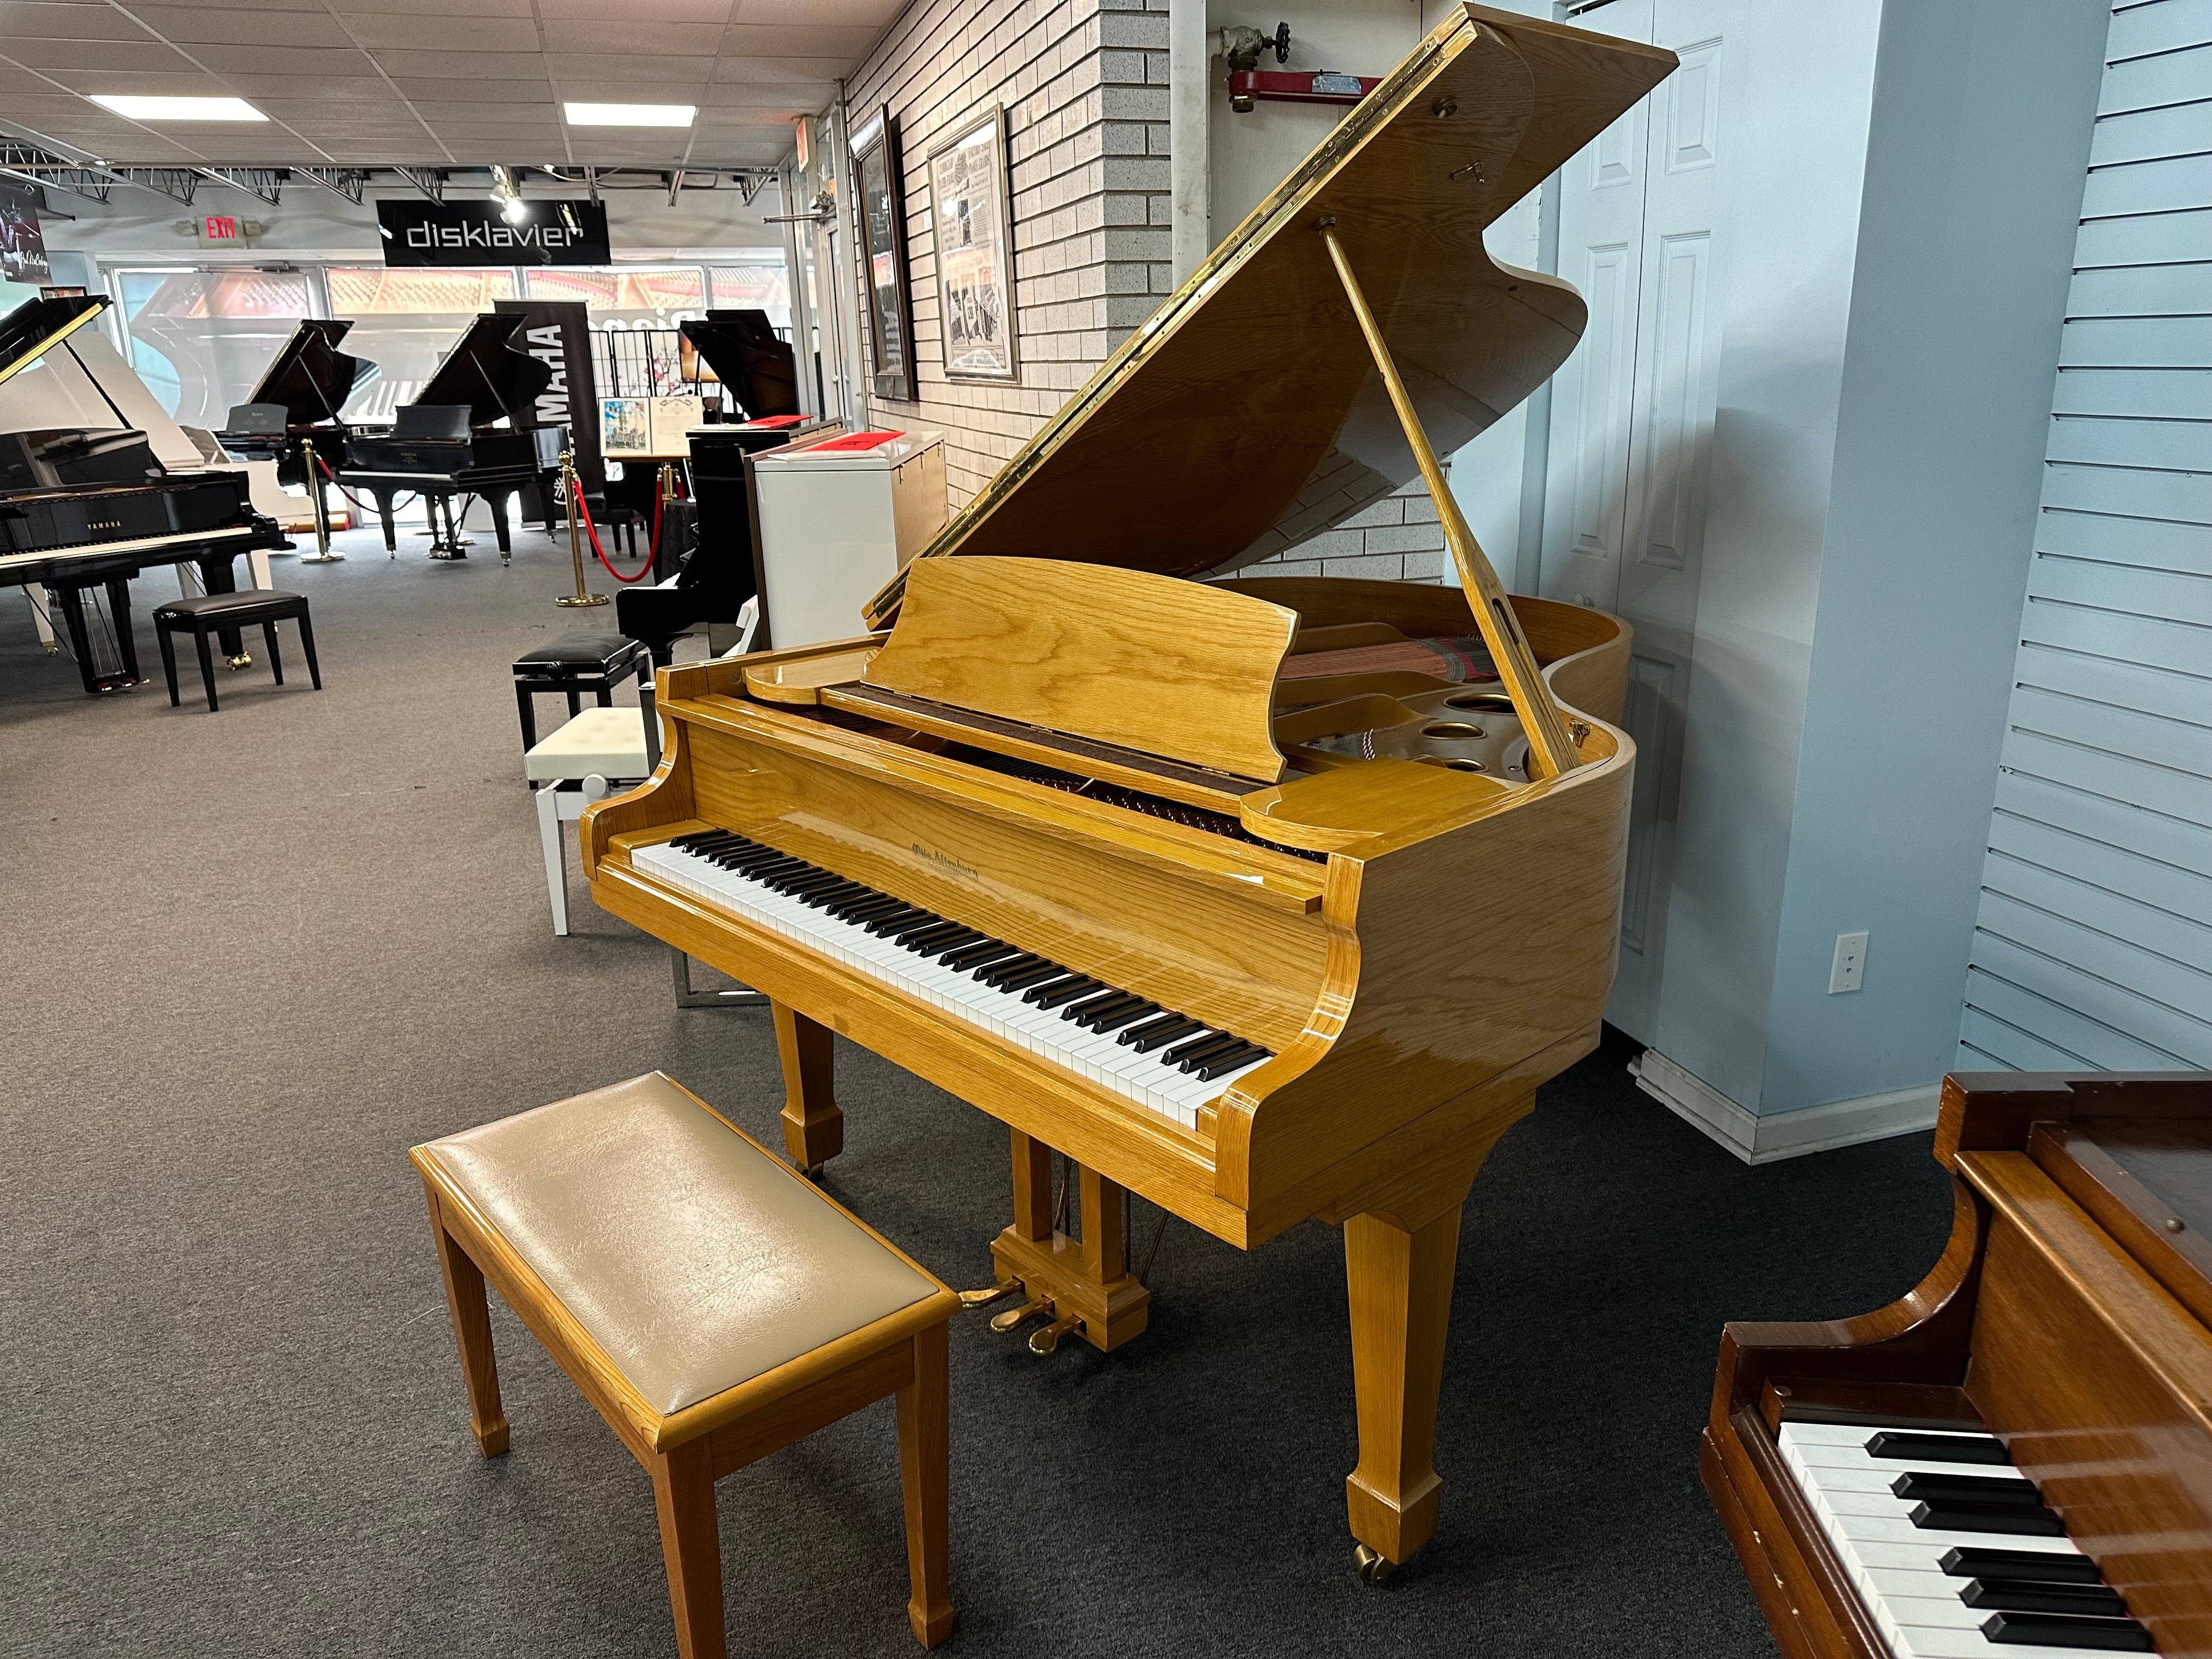 Otto Altenburg SG507 5' Baby Grand Piano in Polished Oak Finish